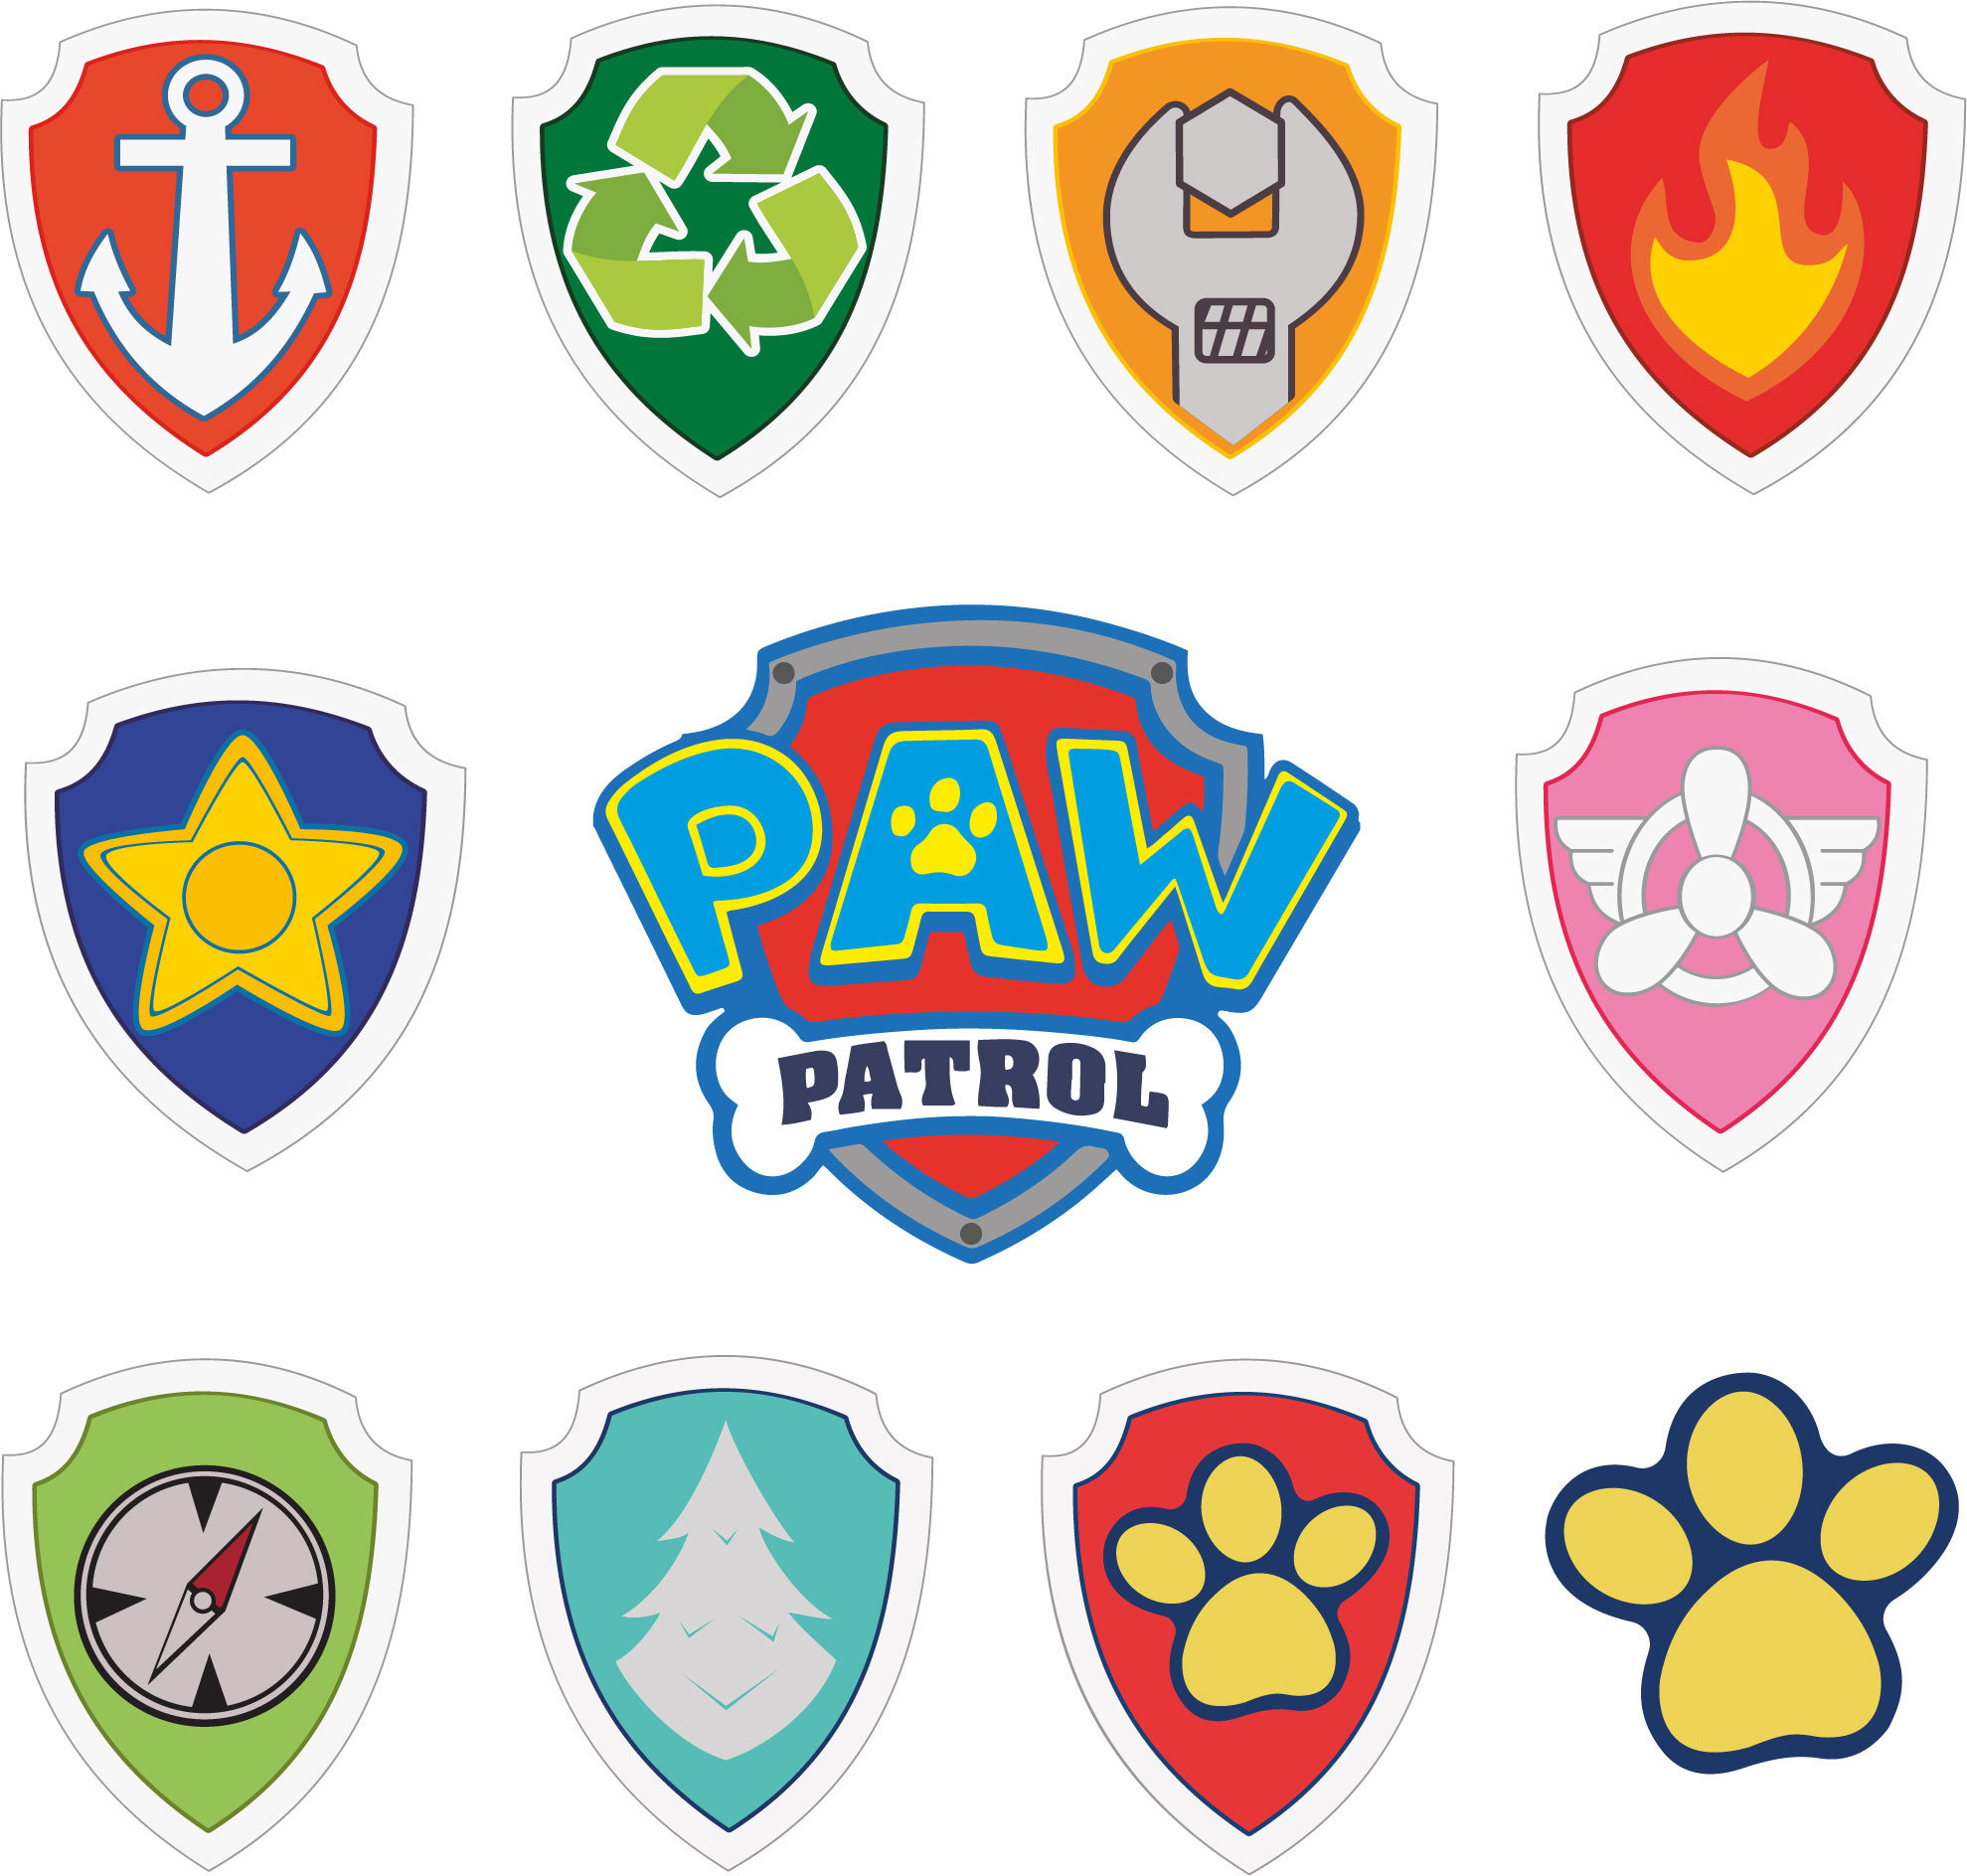 Download PAW Patrol.Svg.Dfx.Eps.Pdf.Png